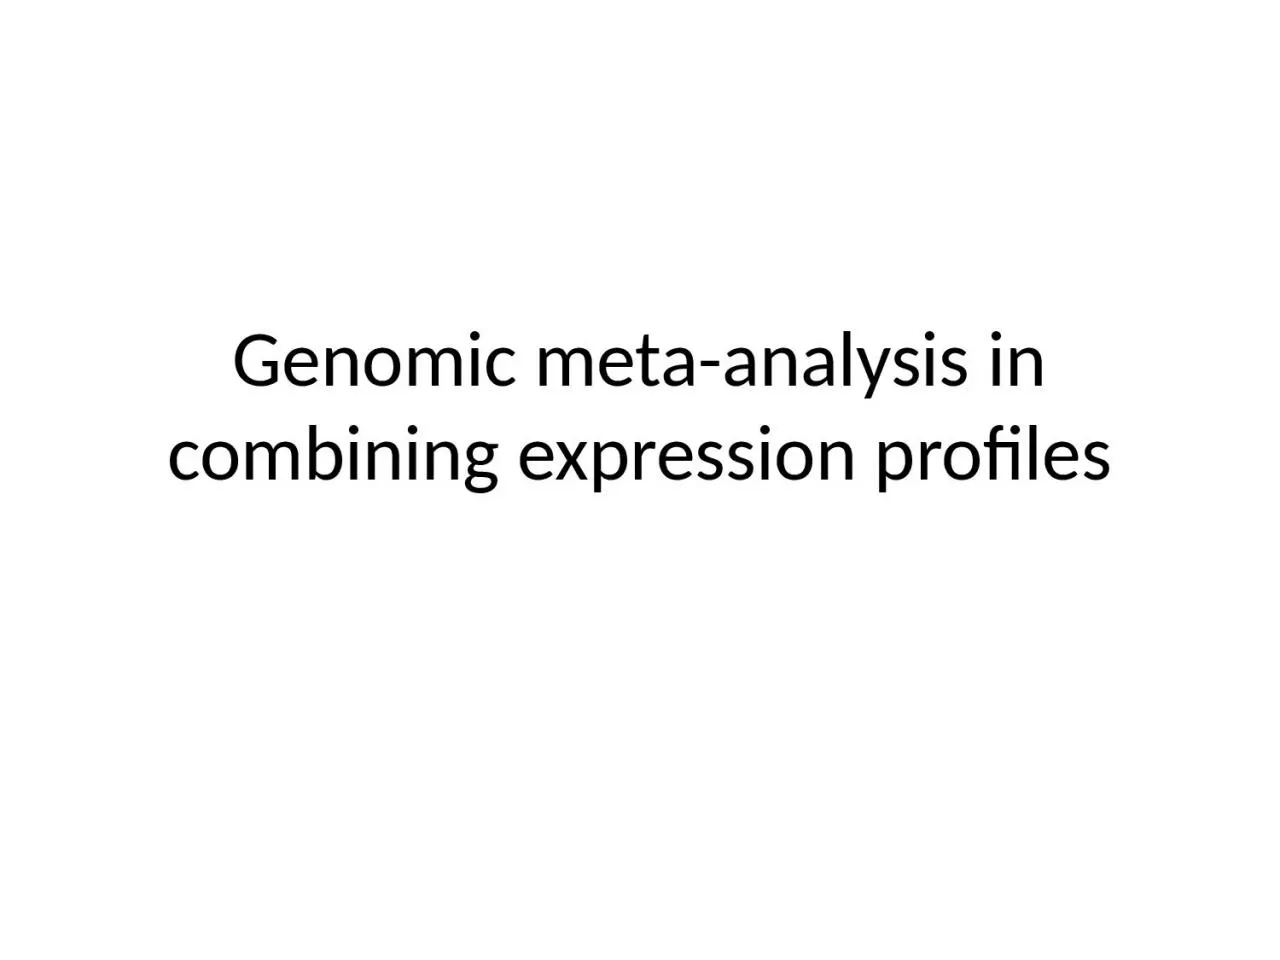 Genomic meta-analysis in combining expression profiles